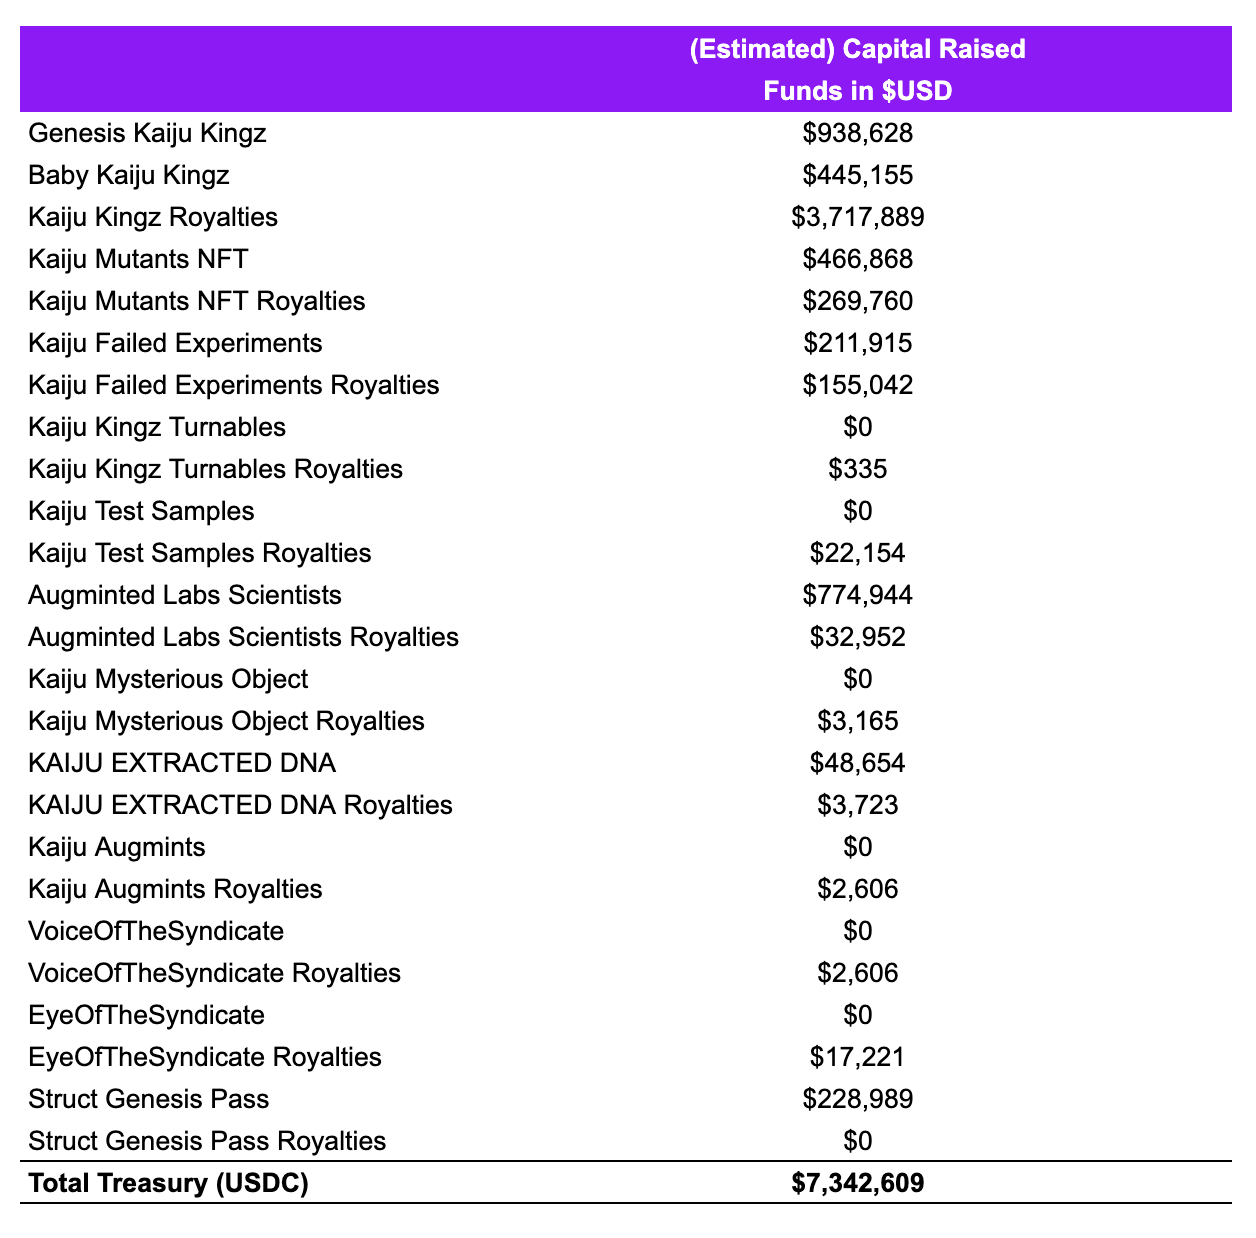 Kaiju Kingz’ Estimated Capital Raised (Table)